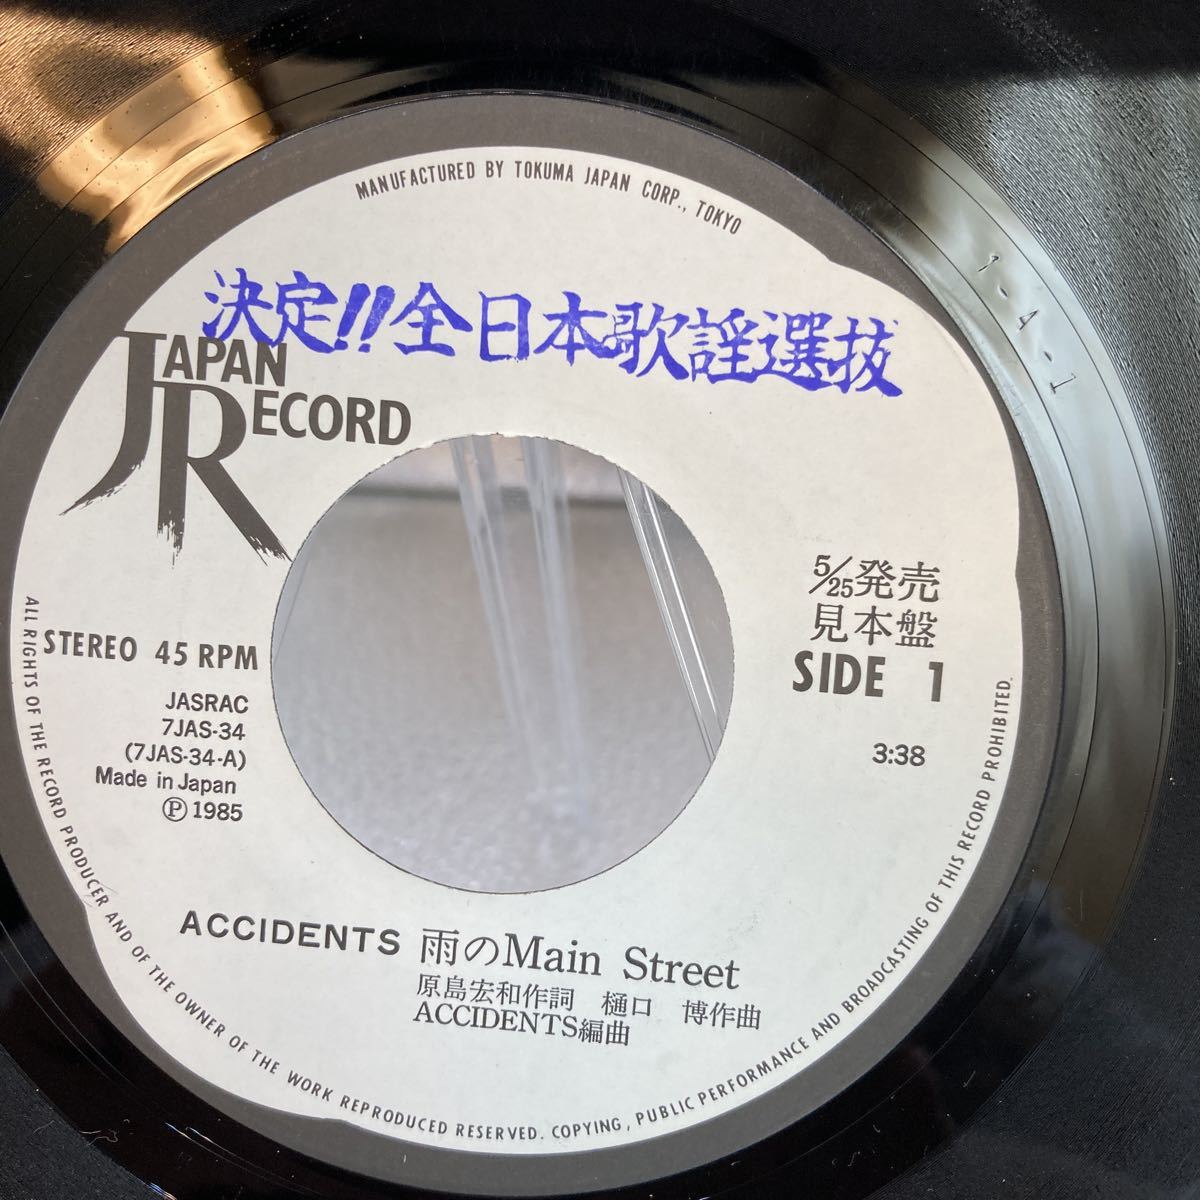 見本盤 決定!! 全日本歌謡選抜 EP/ACCIDENTS(アクシデンツ)「雨のメインストリート / Over Heat(1985年・7JAS-34)」_画像5